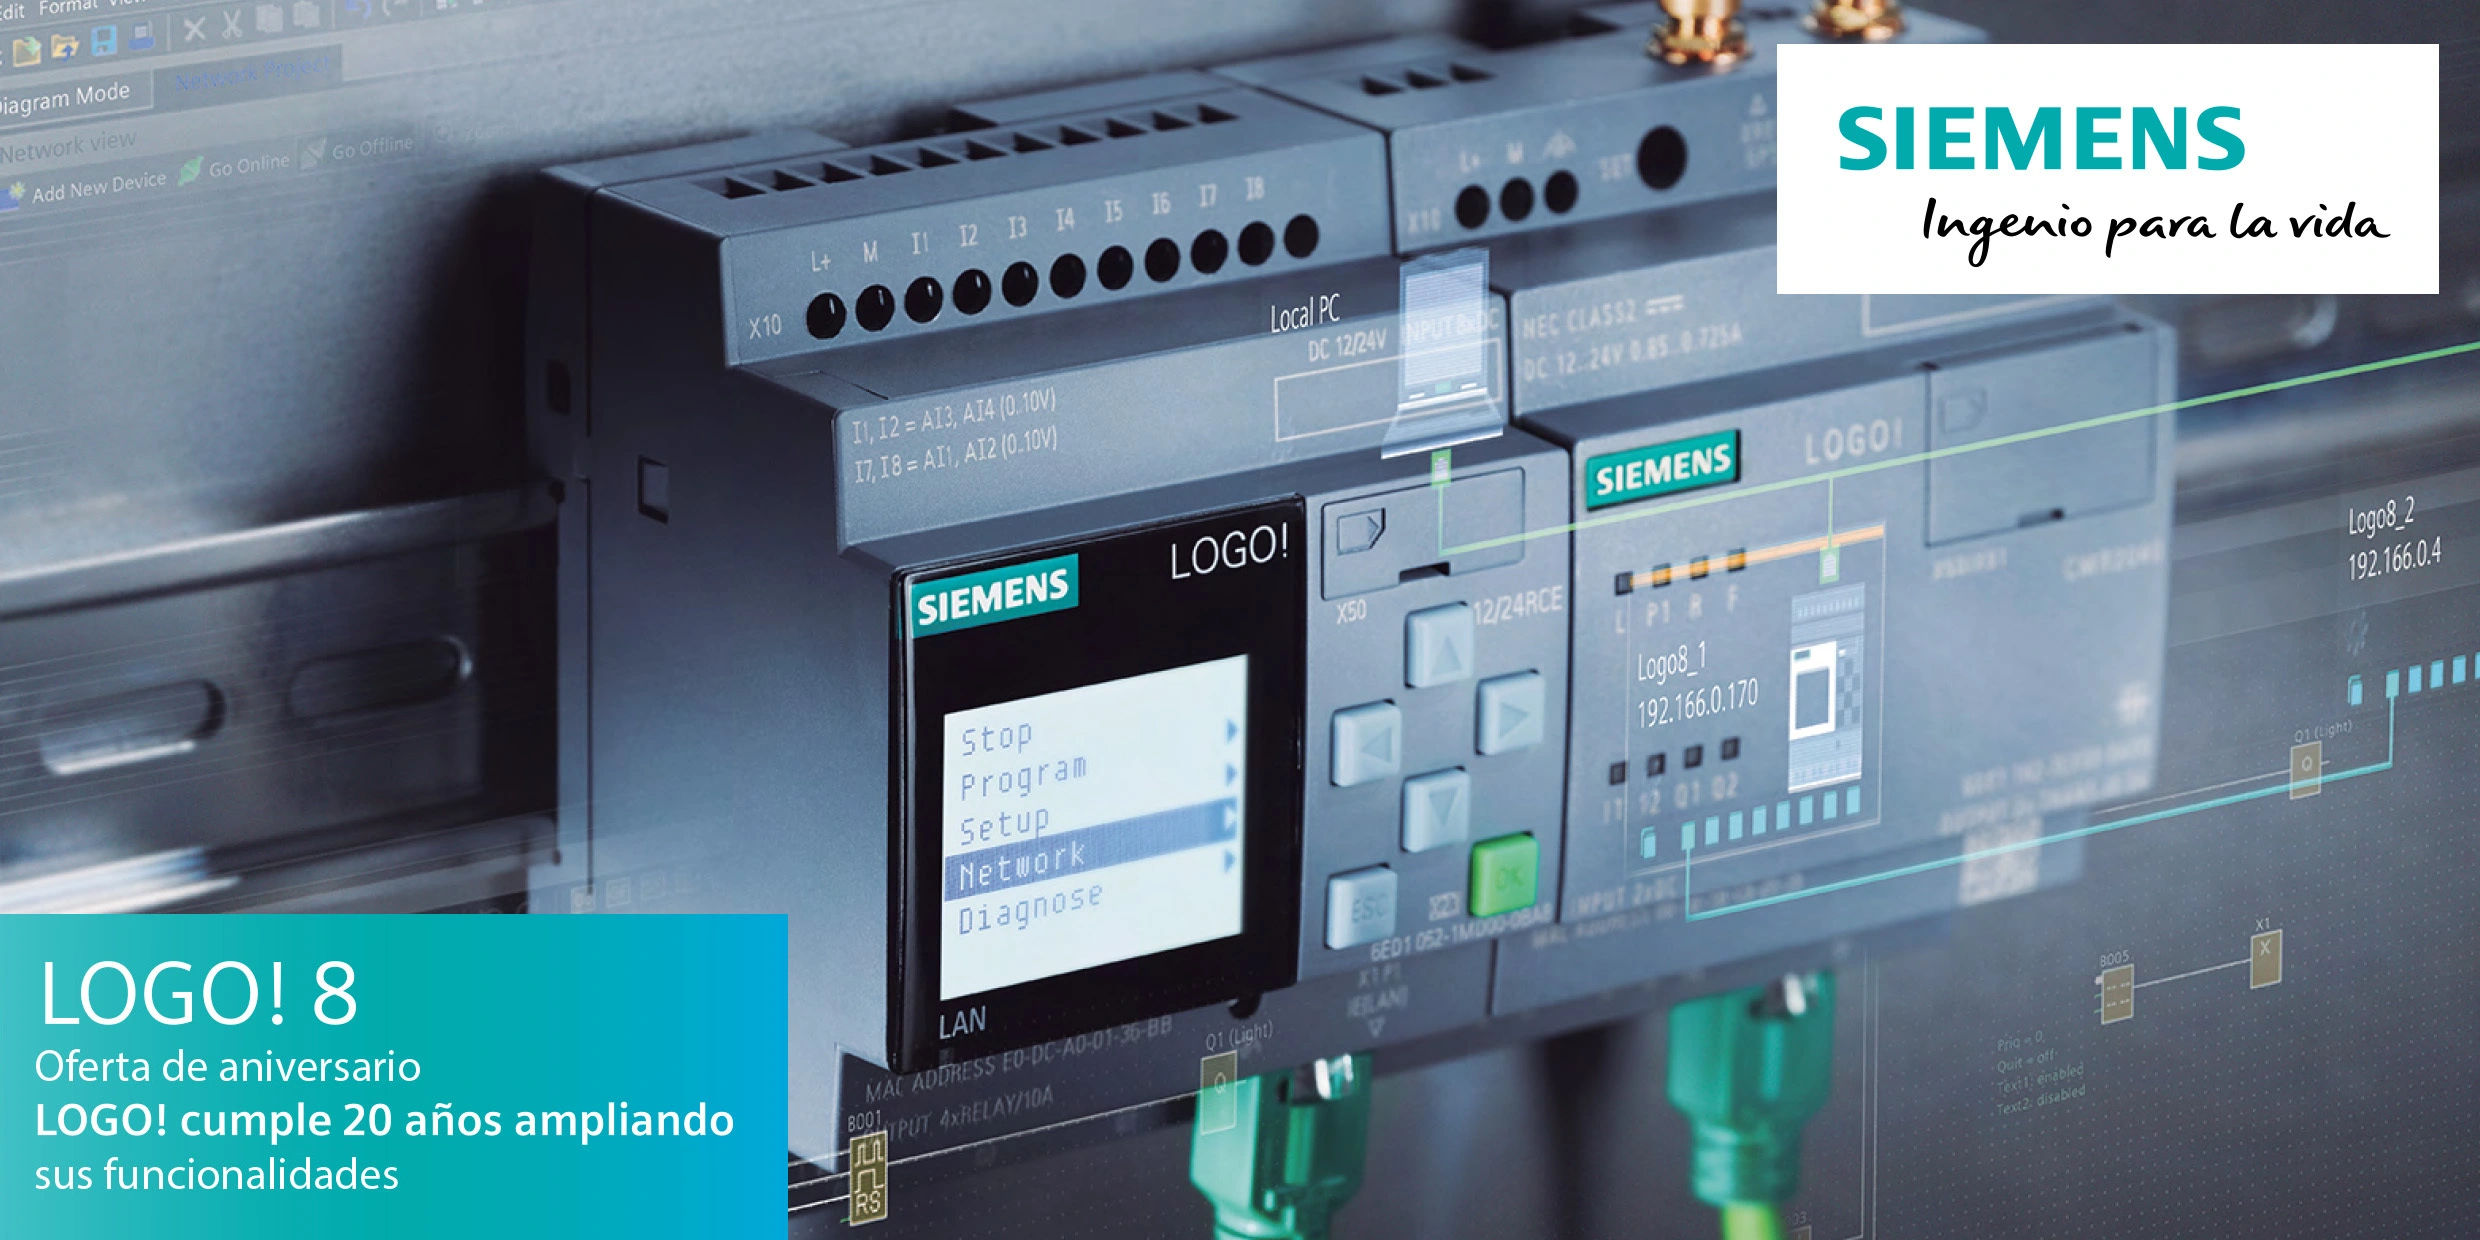 Siemens Periodic Maintenance